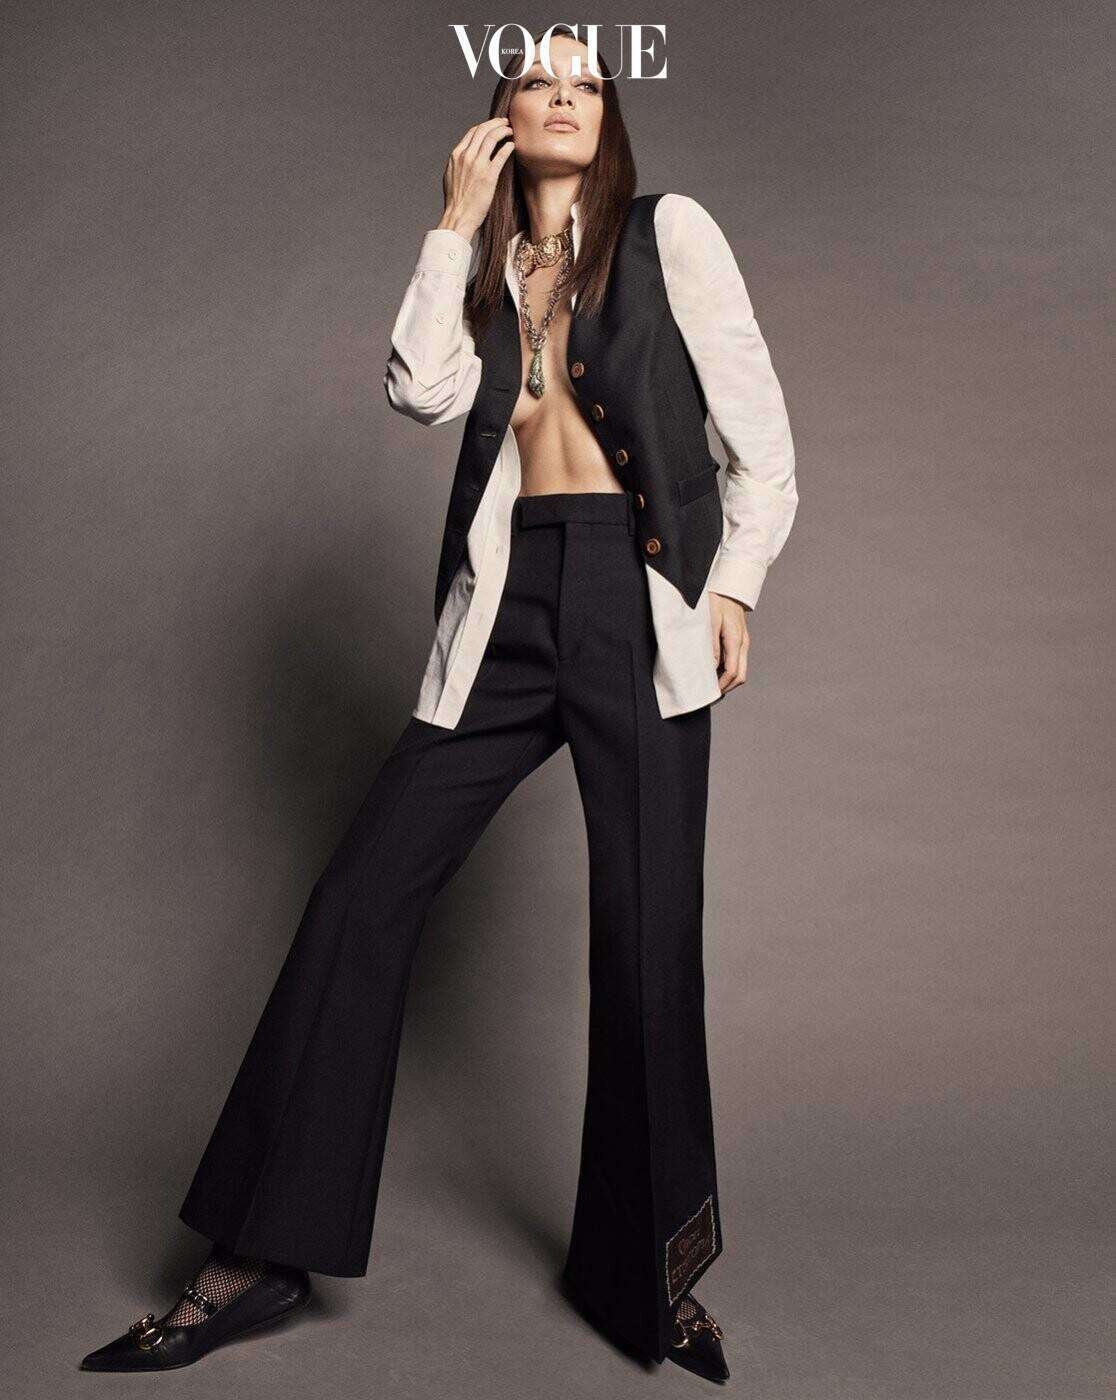 Bella Hadid by Luigi Iango Vogue Korea April 2020 (3).jpg